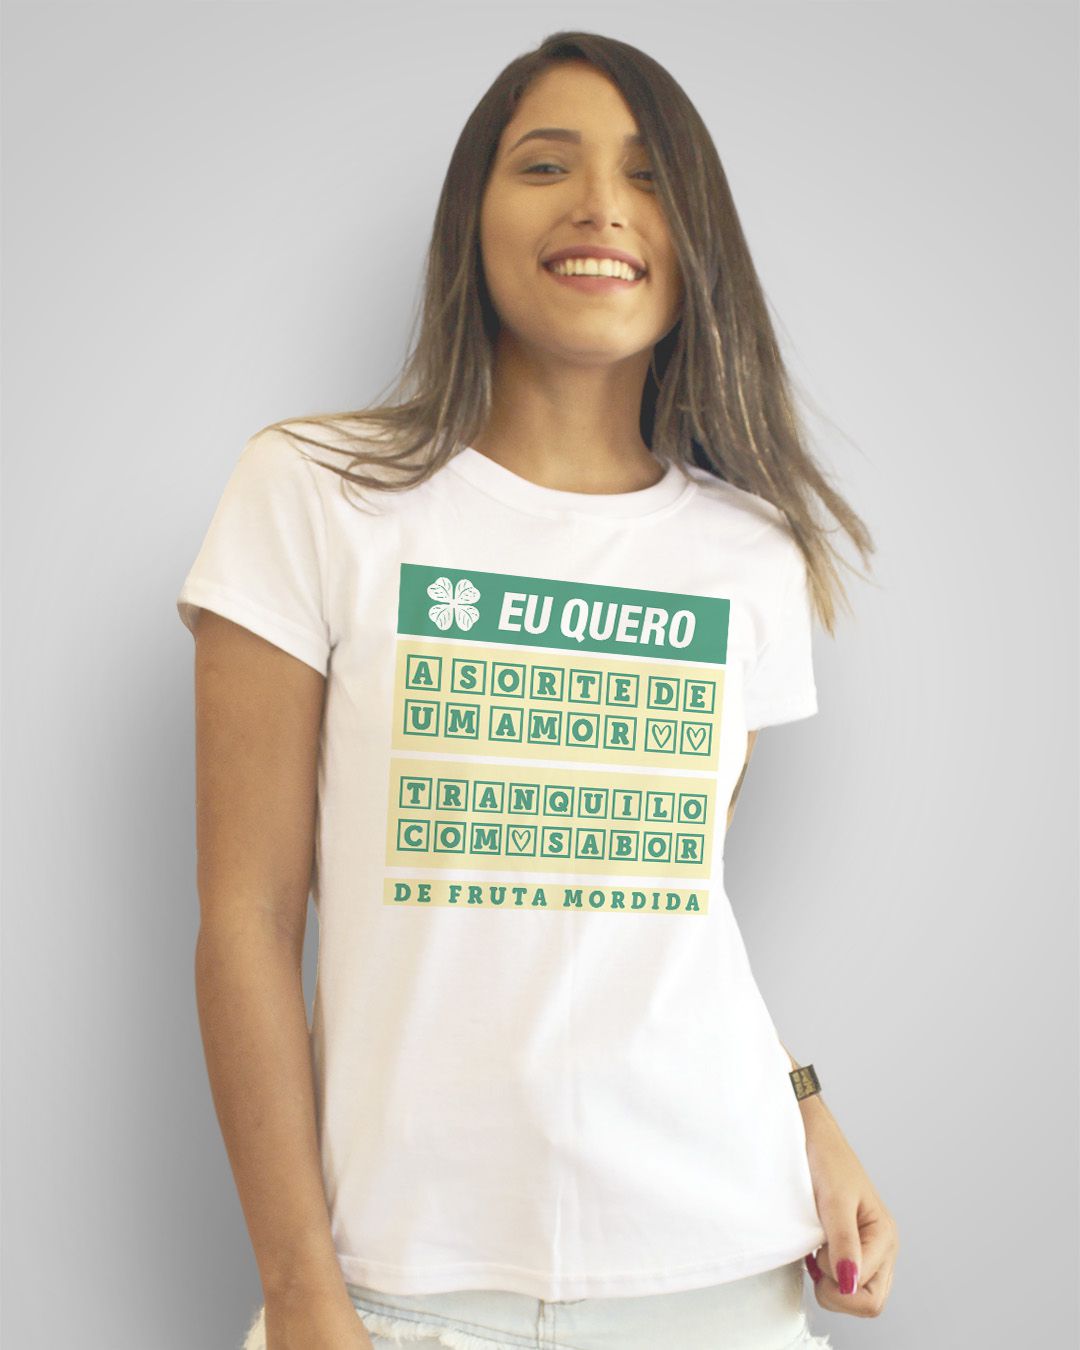 Camiseta Eu quero a sorte de um amor tranquilo, com sabor de fruta mordida - Cazuza ft. Cássia Eller